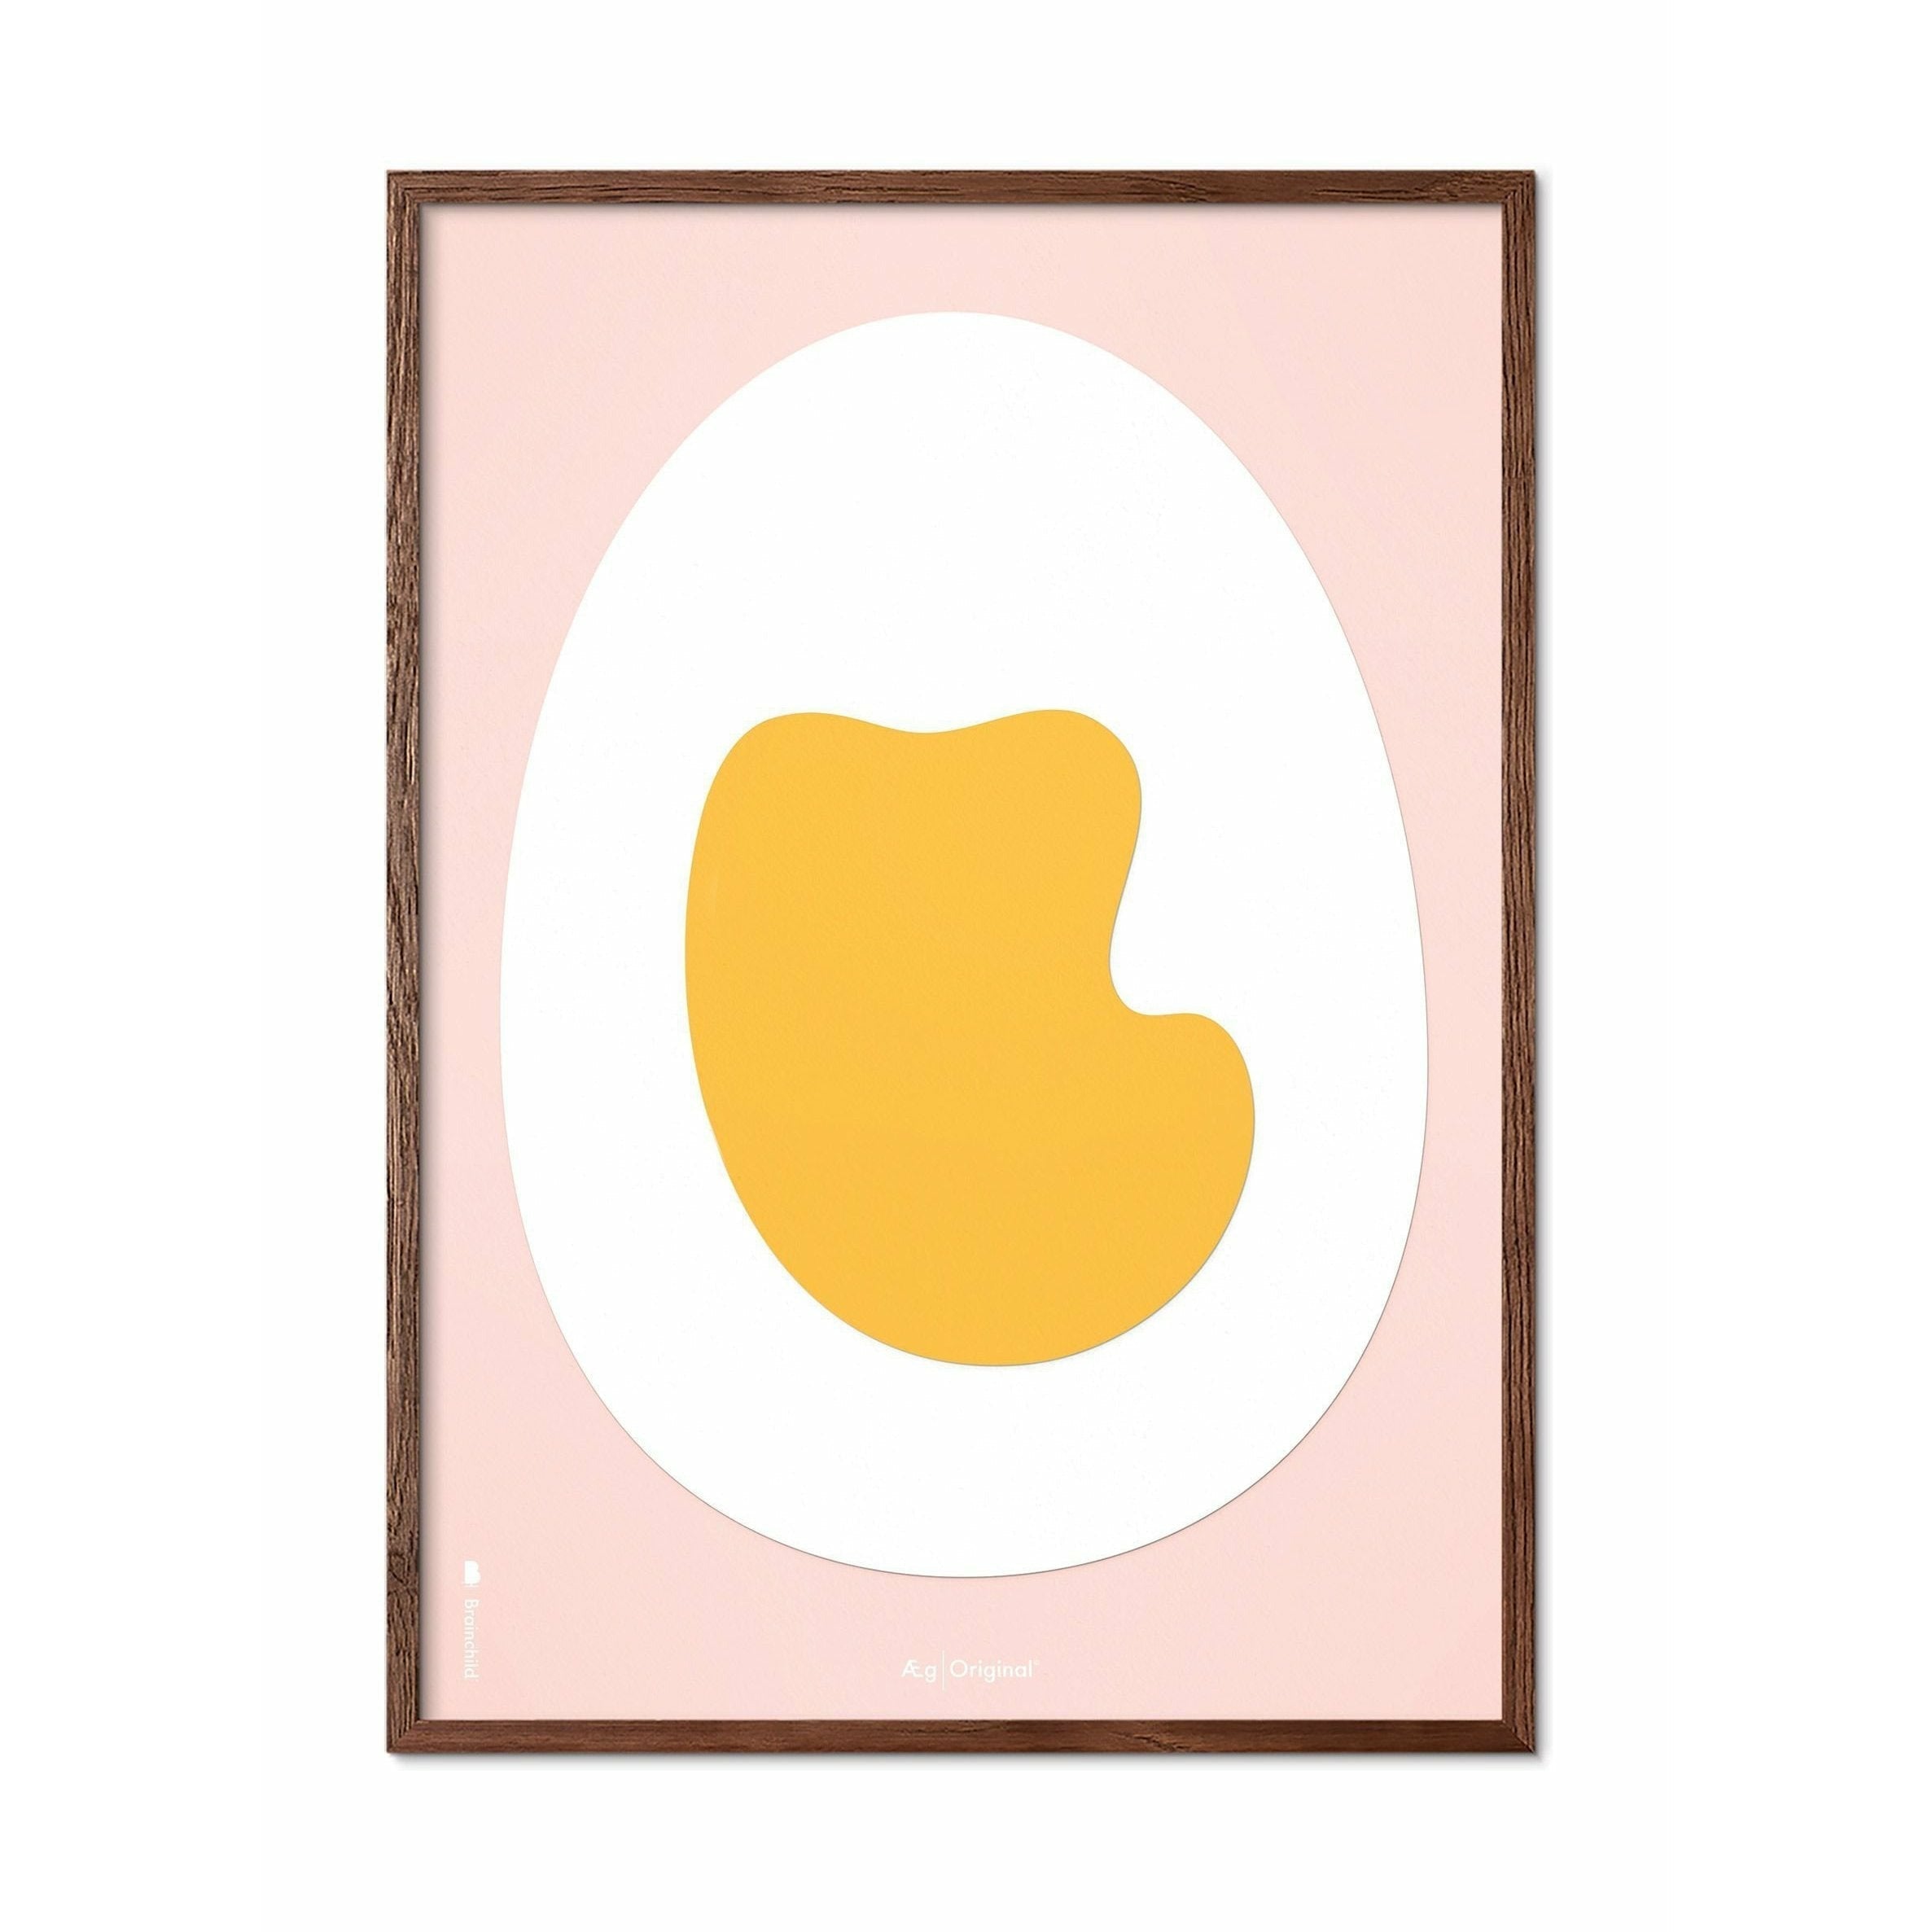 Póster de clip de papel de huevo de creación, marco hecho de madera oscura 50x70 cm, fondo rosa